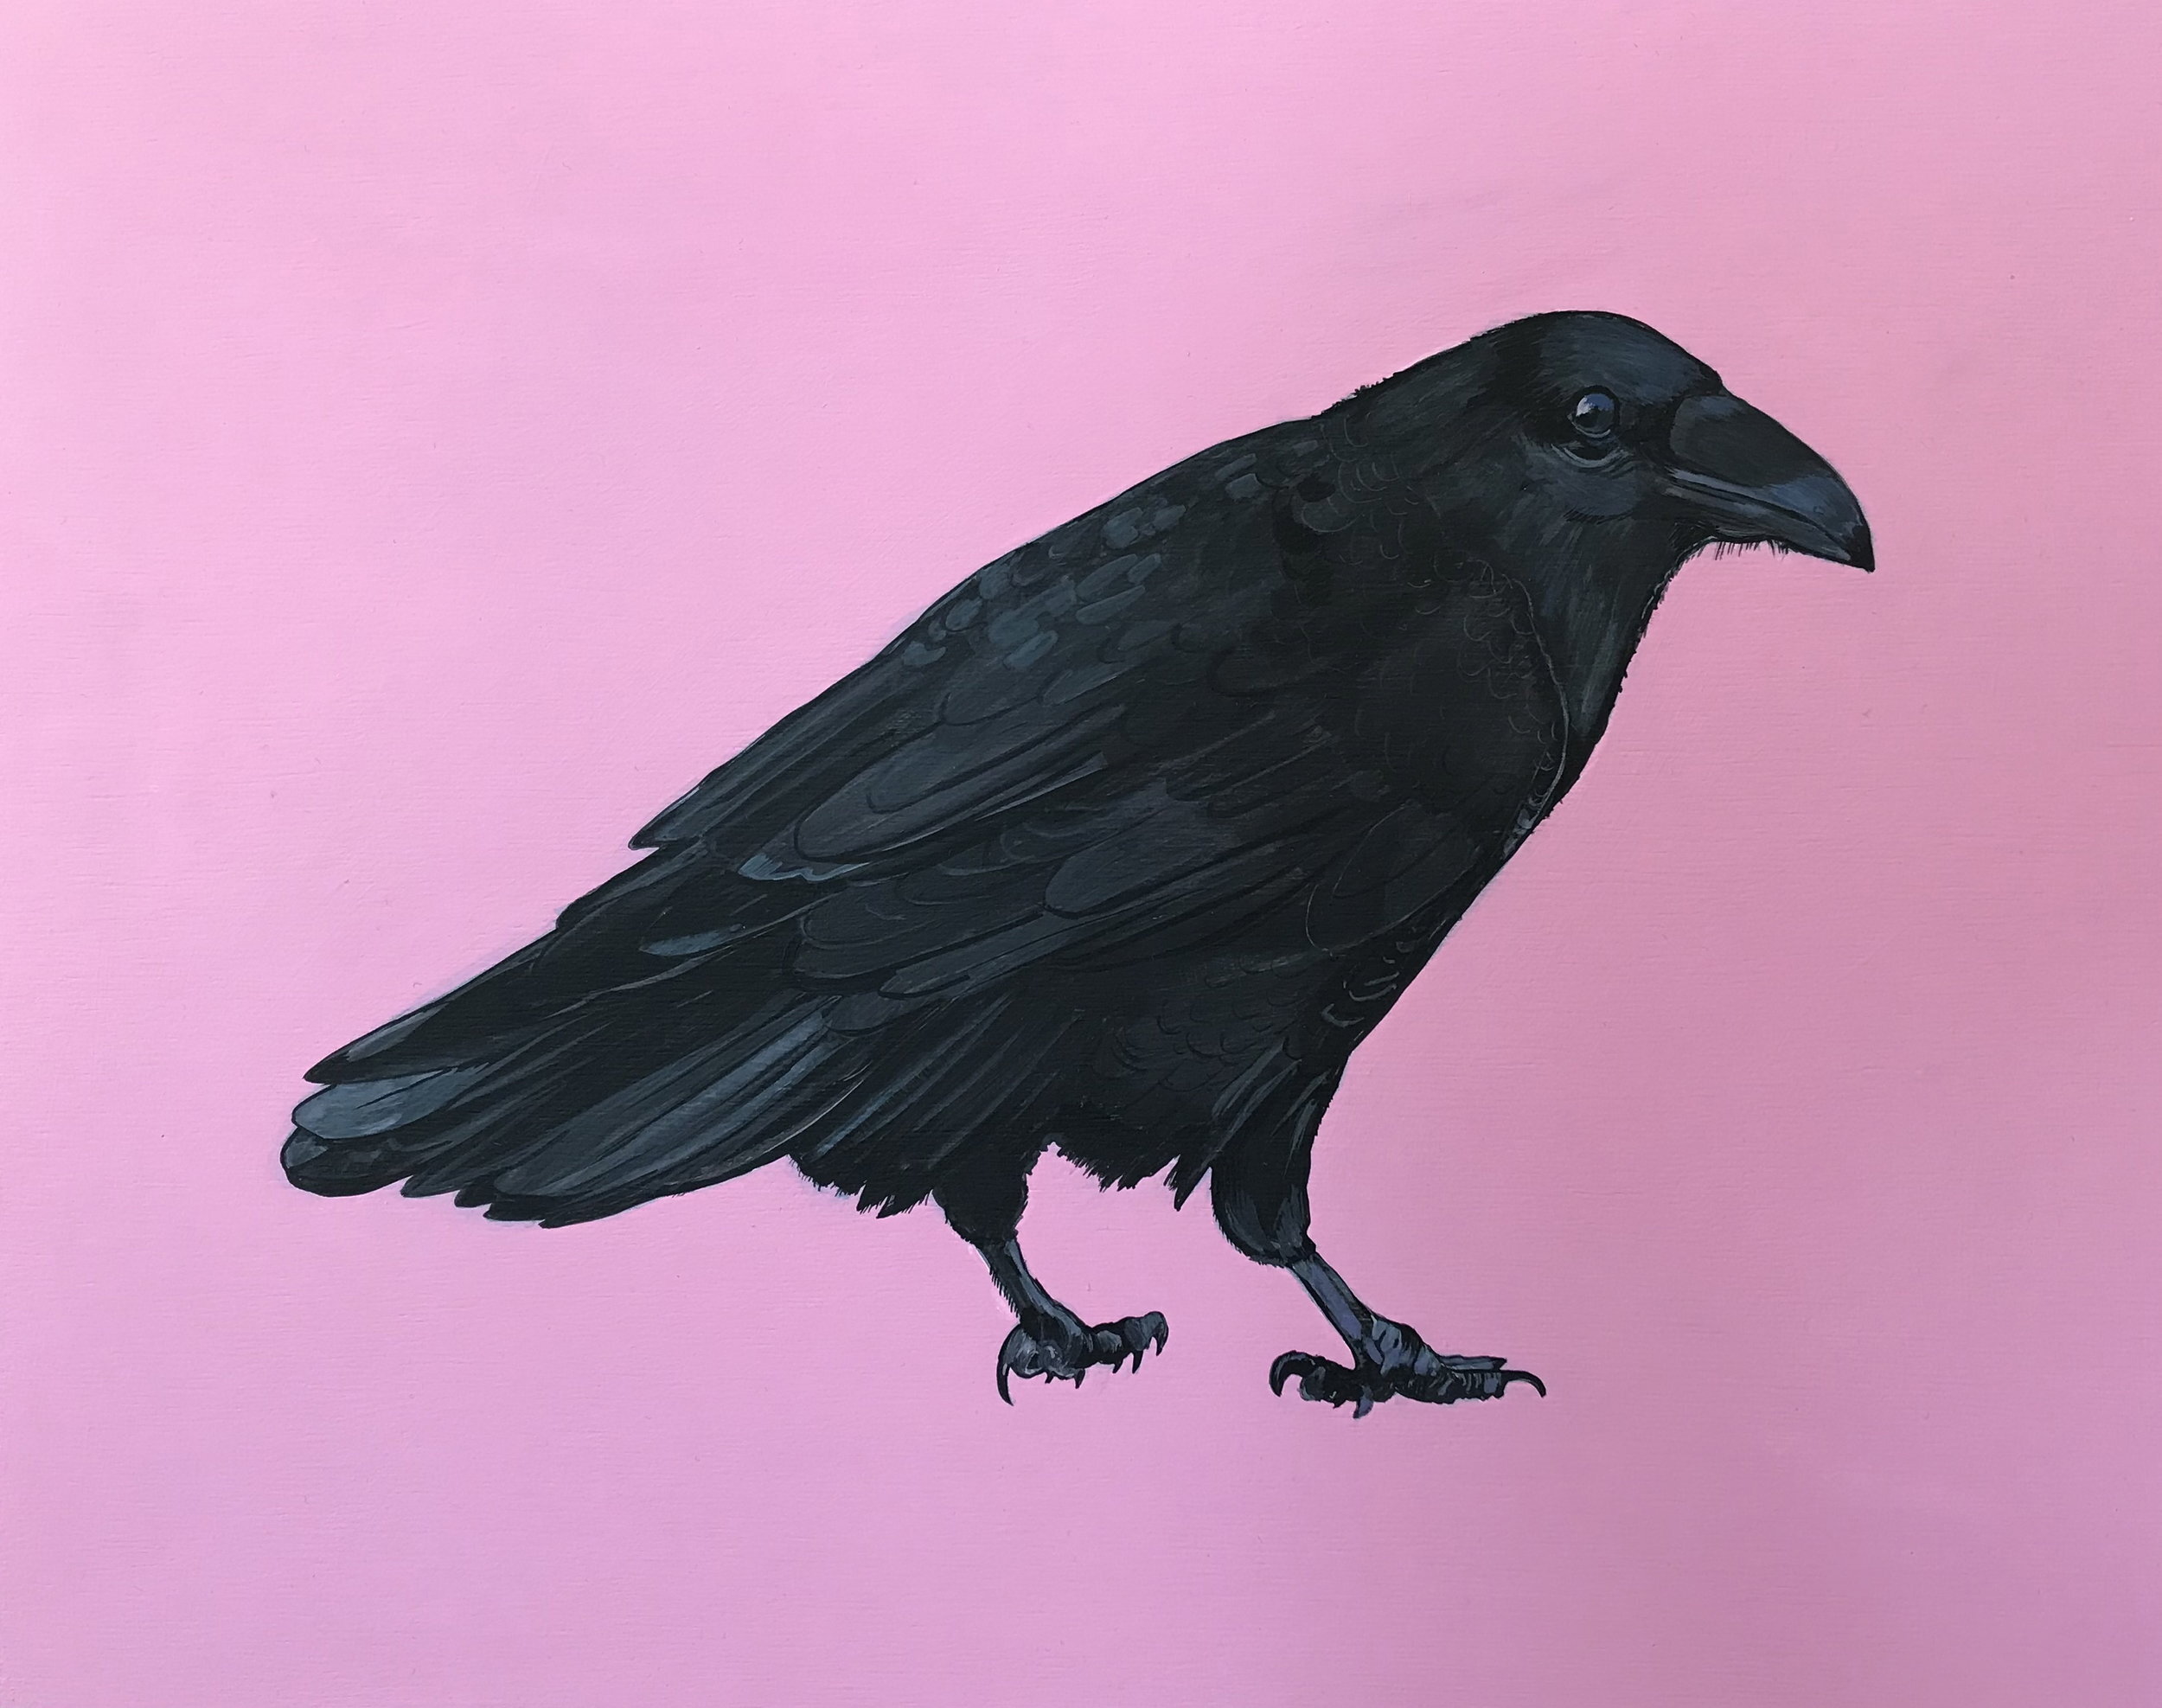 Raven, 2018, Acrylic on Wood Panel, 11" x 14".